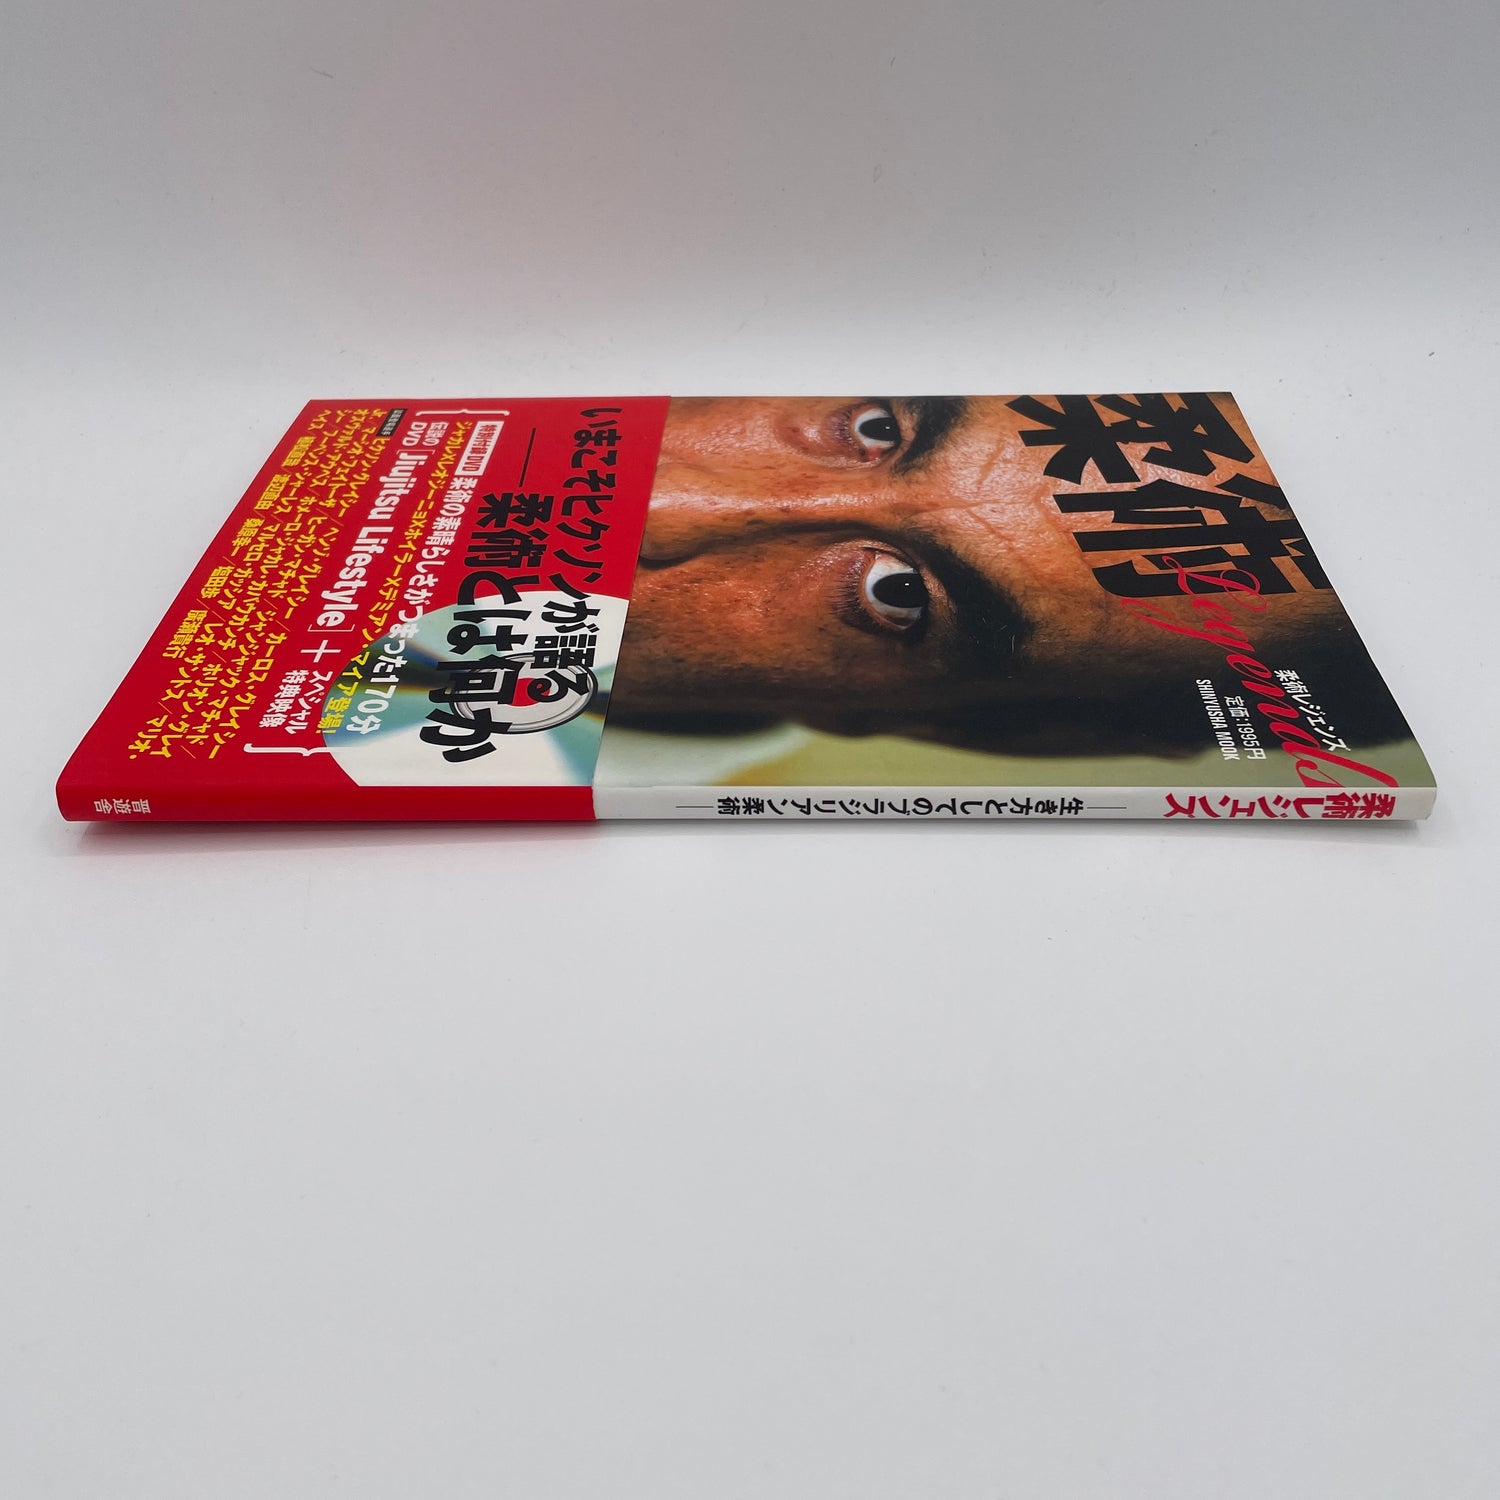 Jiu-jitsu Legends Book & DVD (Preowned)